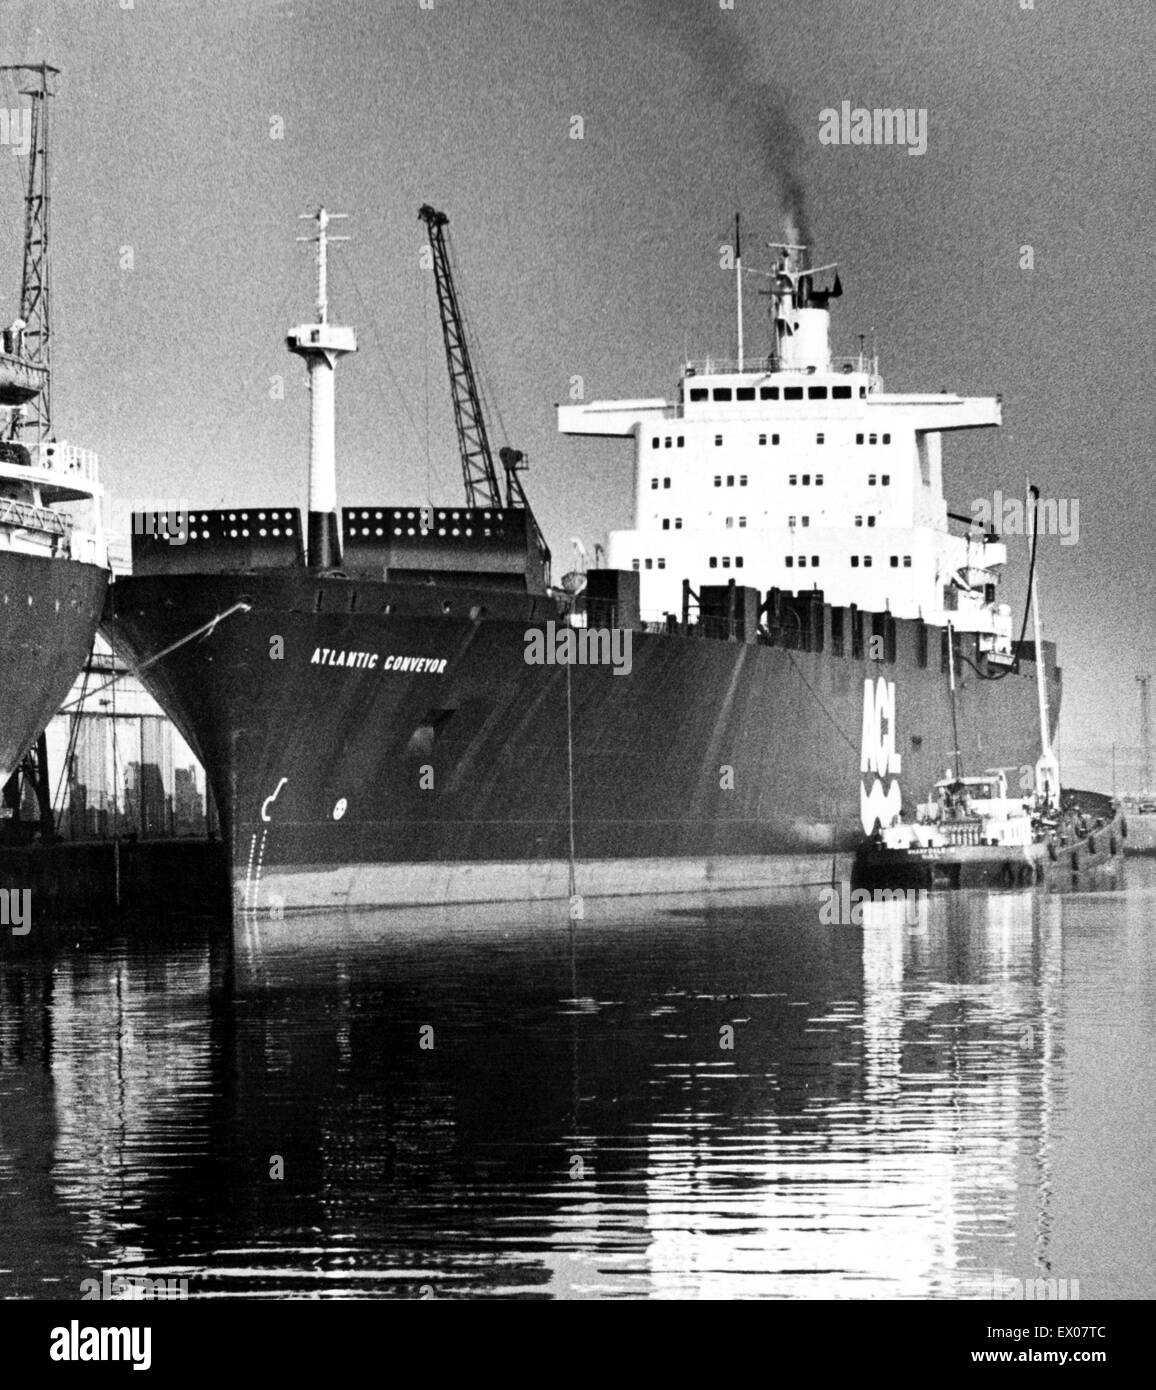 Le convoyeur de l'Atlantique, un navire de la marine marchande britannique, qui a été réquisitionné pendant la guerre des Malouines. Elle a été frappé le 25 mai 1982 par deux air-Argentine AM39 Exocet, tuant 12 marins. Vers 1980. Banque D'Images